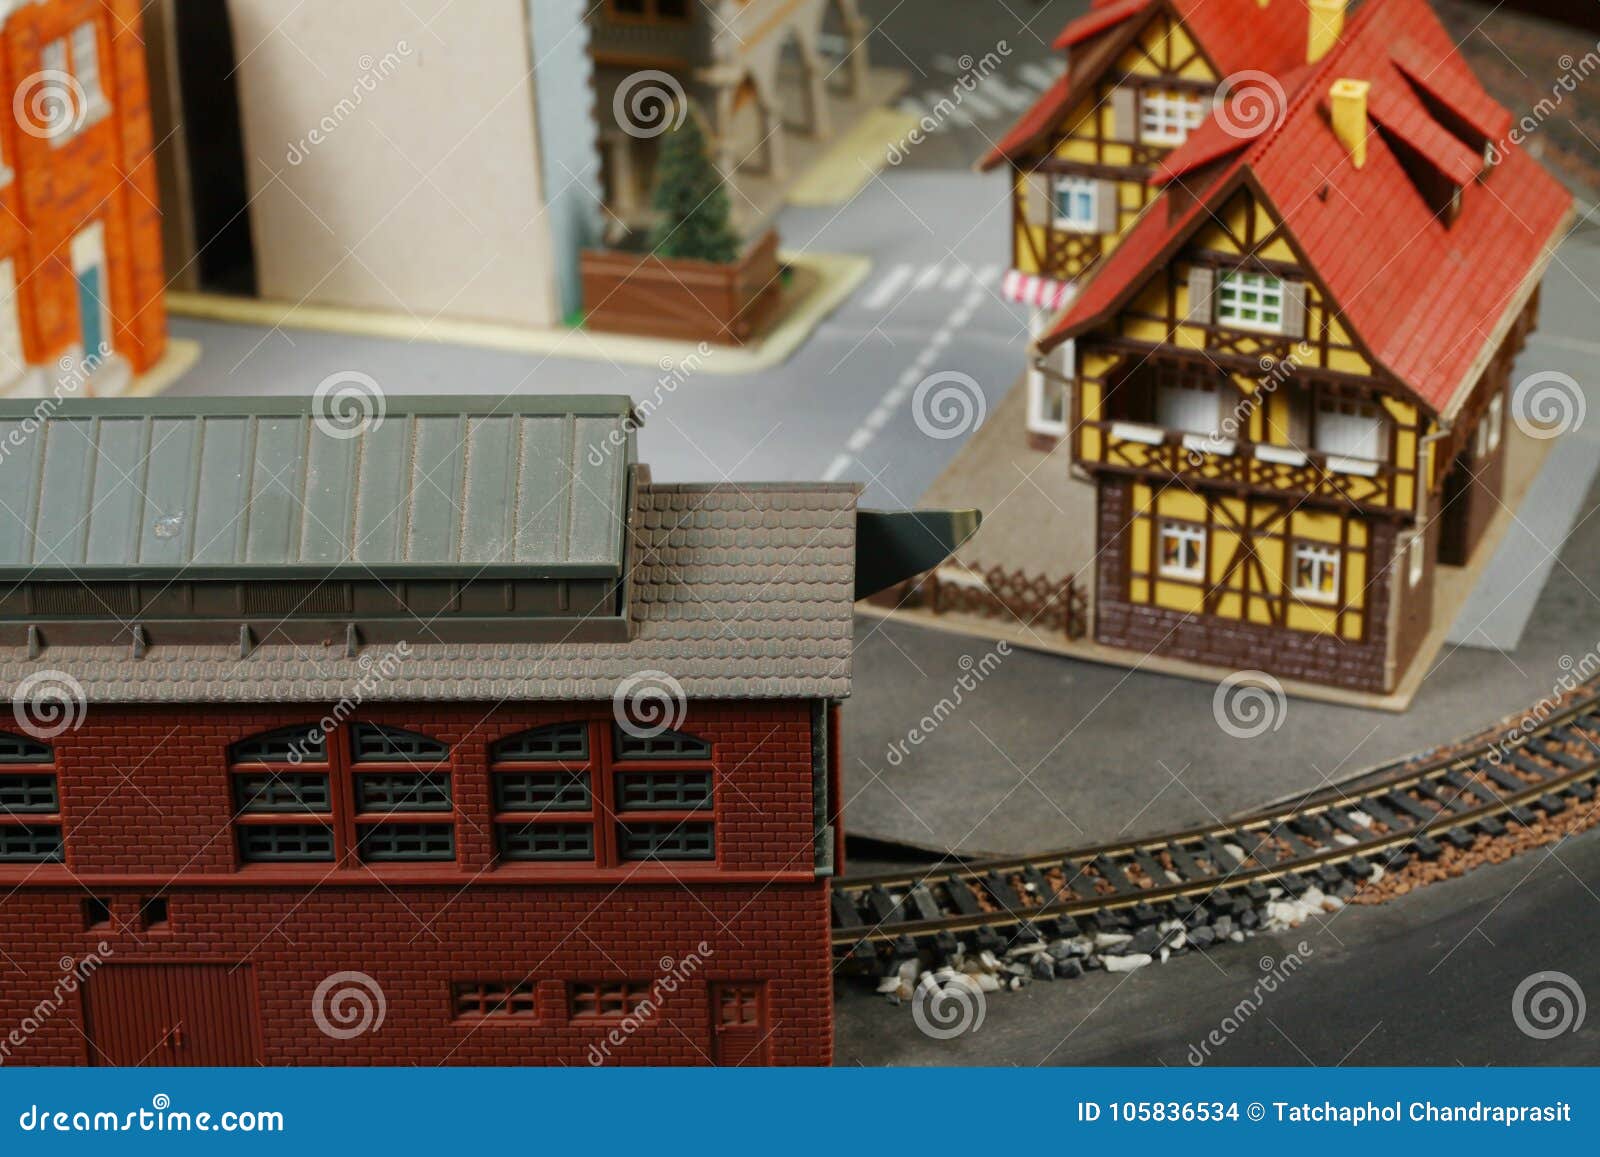 Model Railway Scenery Free Downloads